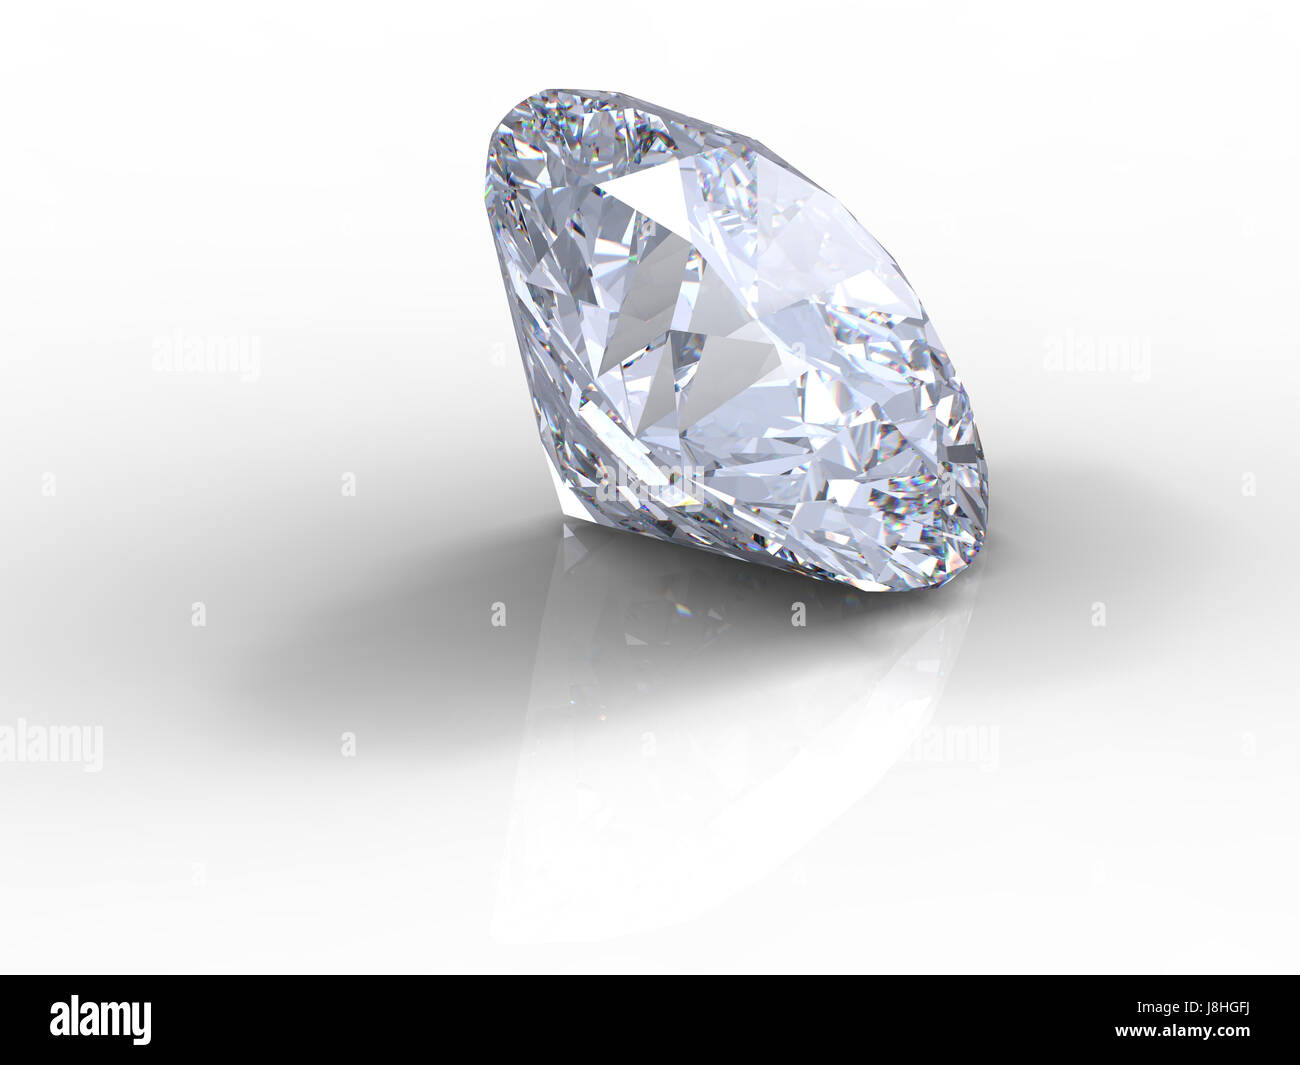 Crystal, Jewel, diamante, abstracto, claro, blanco, piedra, madera, joyas  Fotografía de stock - Alamy